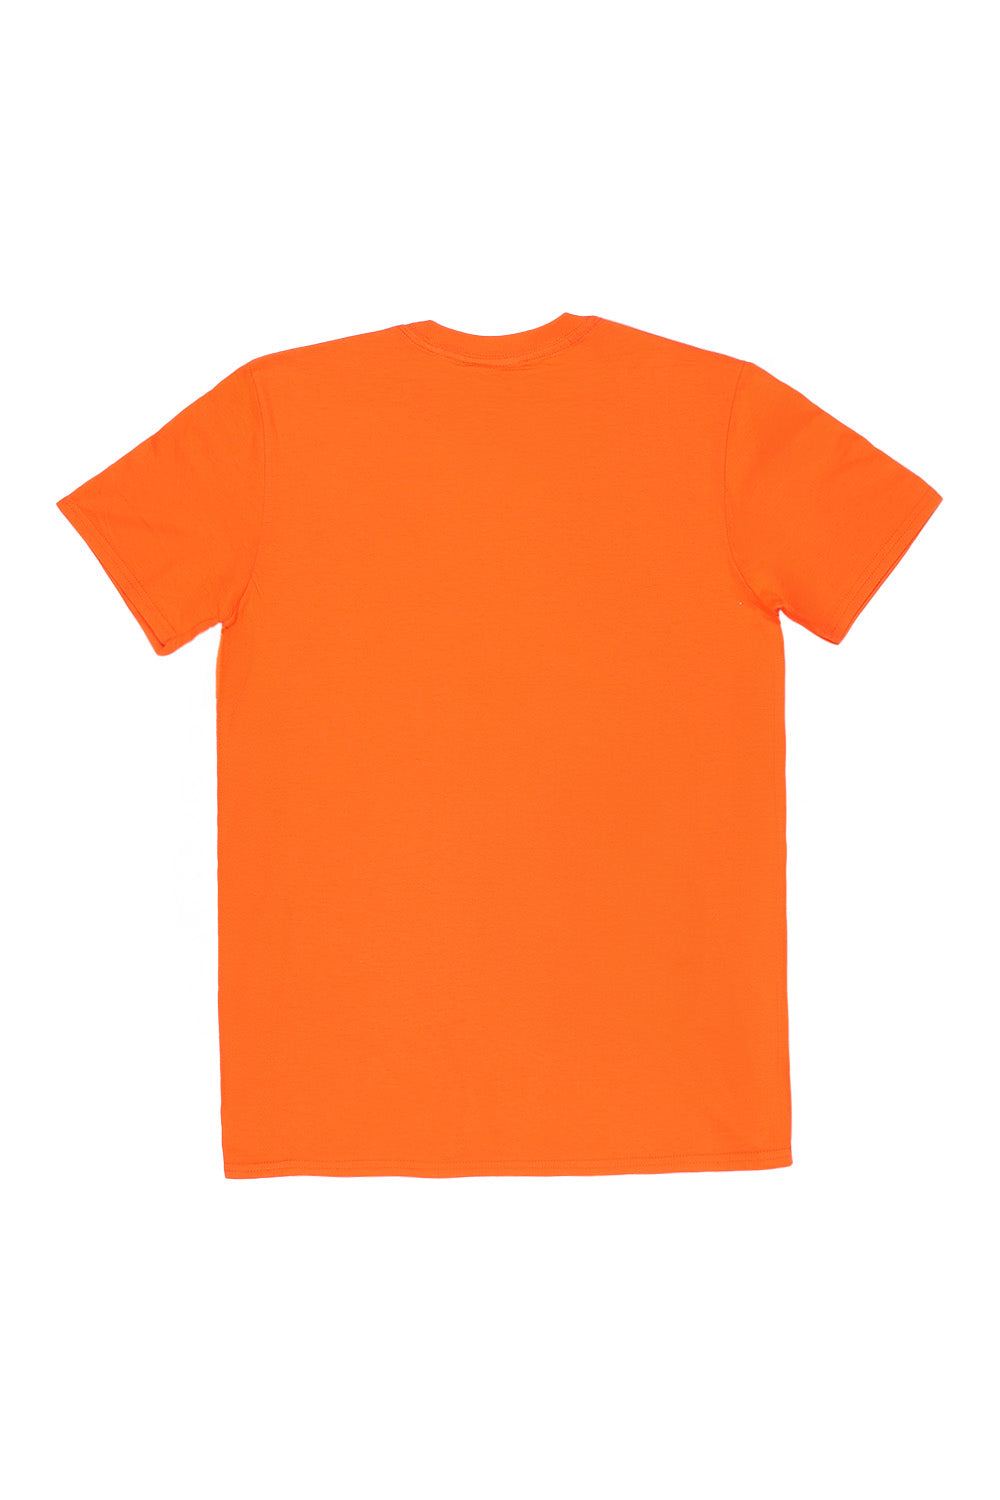 Beverly Hills T-Shirt in Orange (Custom Packs)